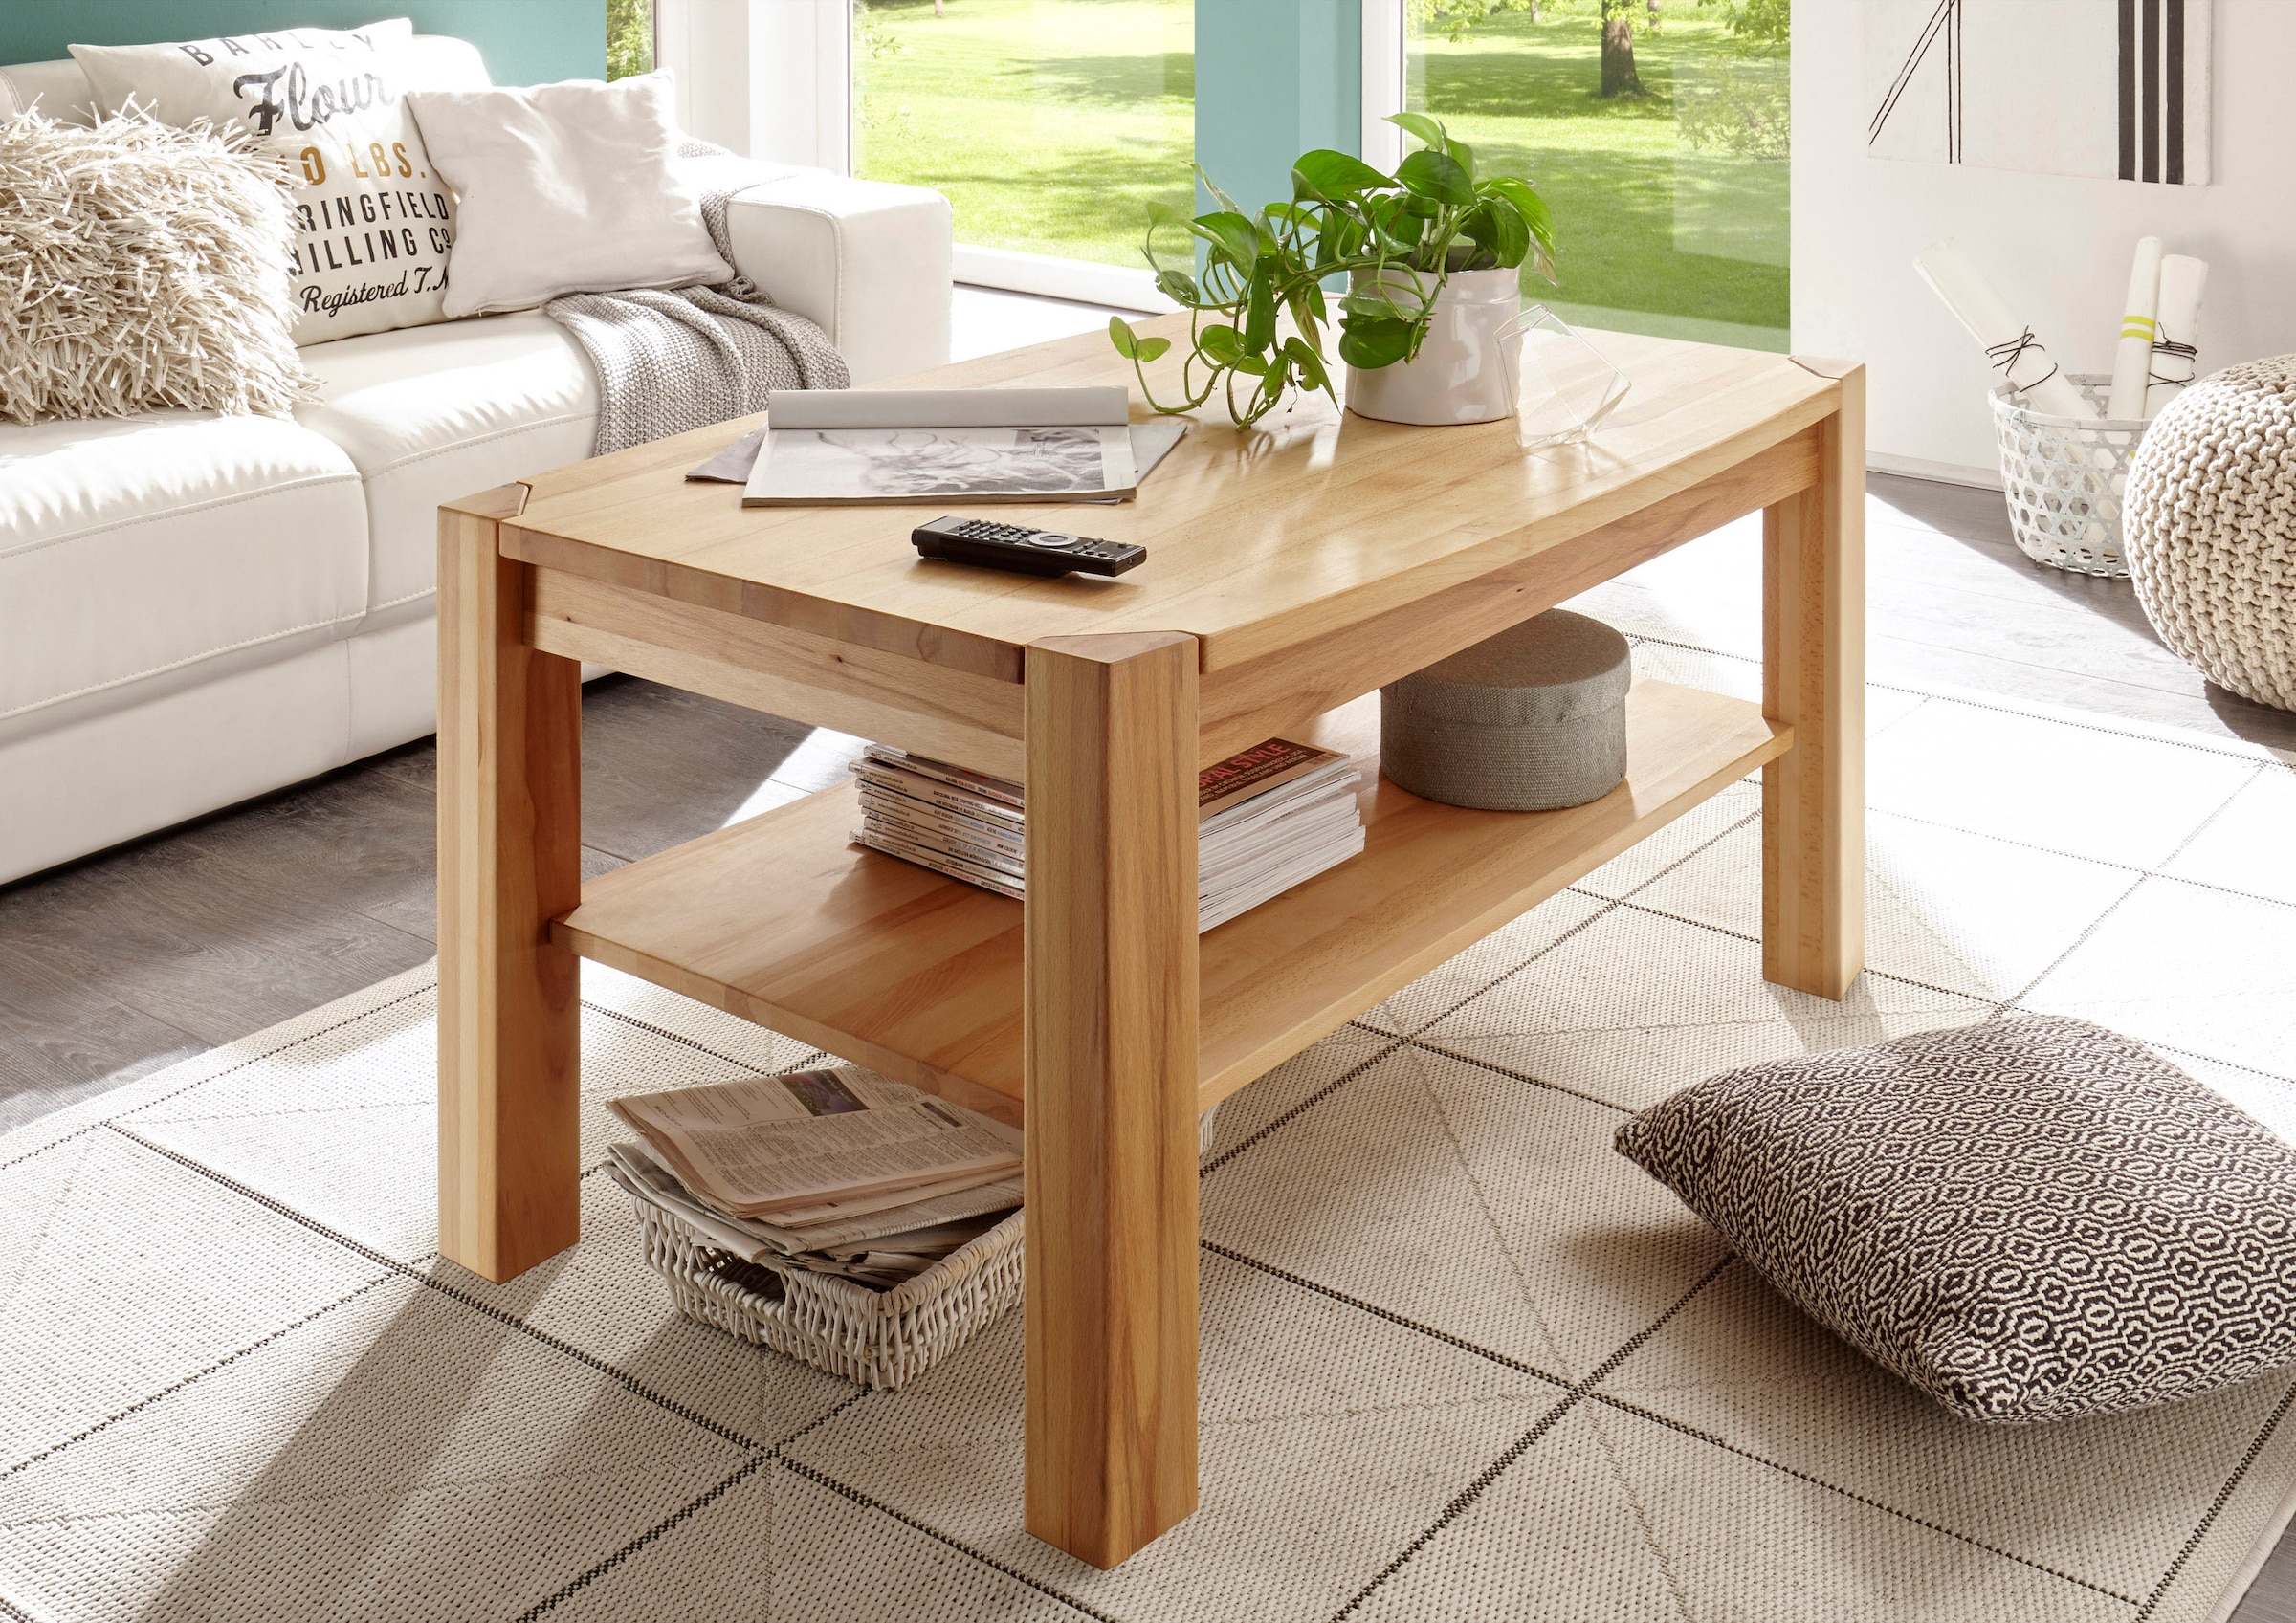 MCA furniture Couchtisch, Couchtisch Massivholz mit Ablage jetzt kaufen